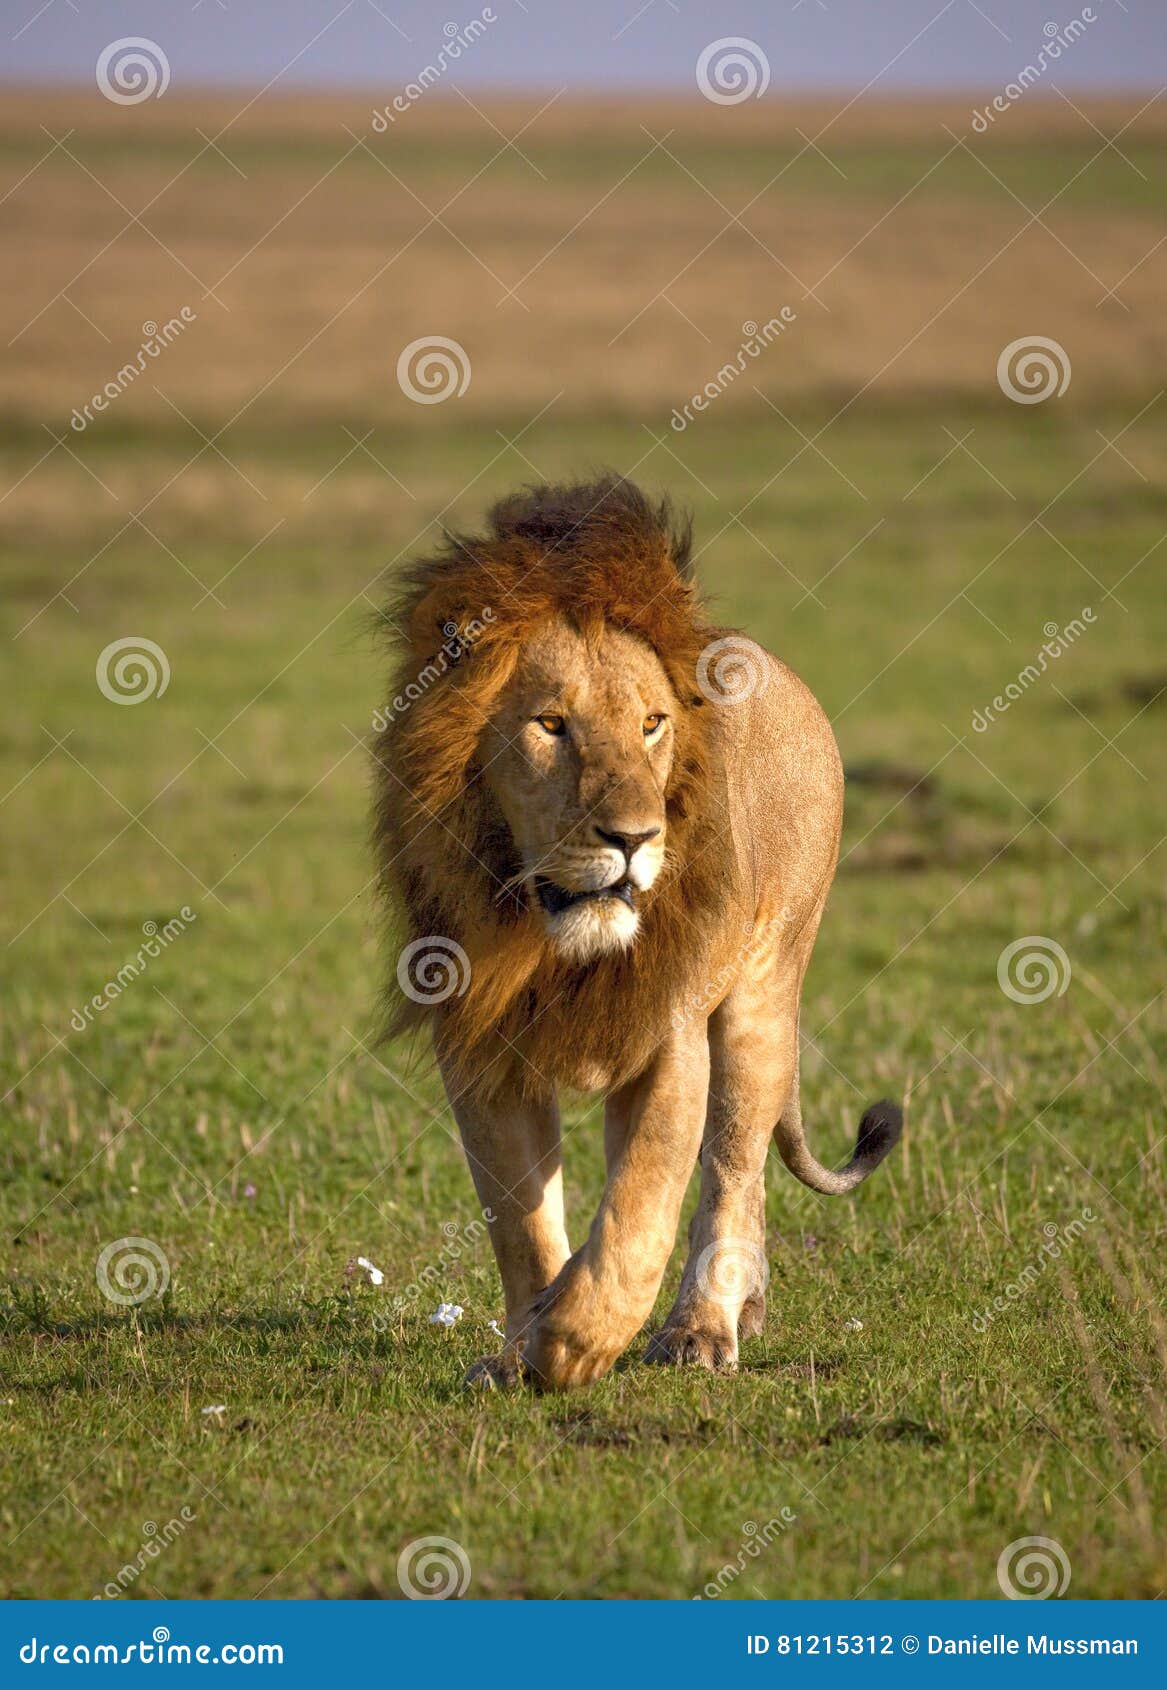 科学网—关于狮子和什么狗 - 谢力的博文